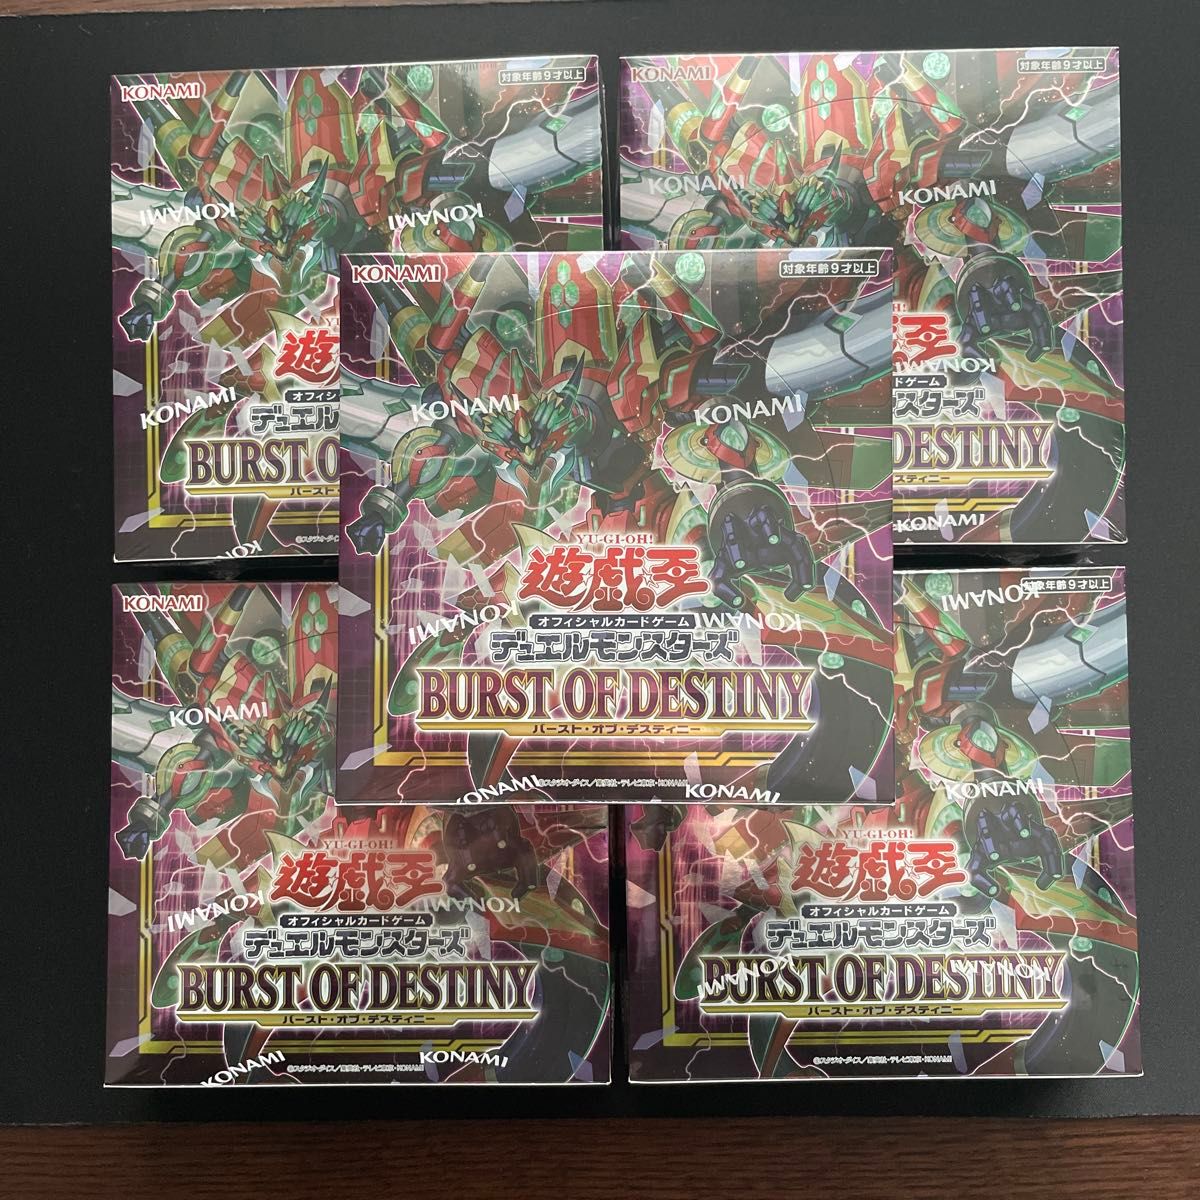 遊戯王 デュエルモンスターズ BURST OF DESTINY バースト・オブ・デスティニー 5BOX シュリンク付き 新品未開封